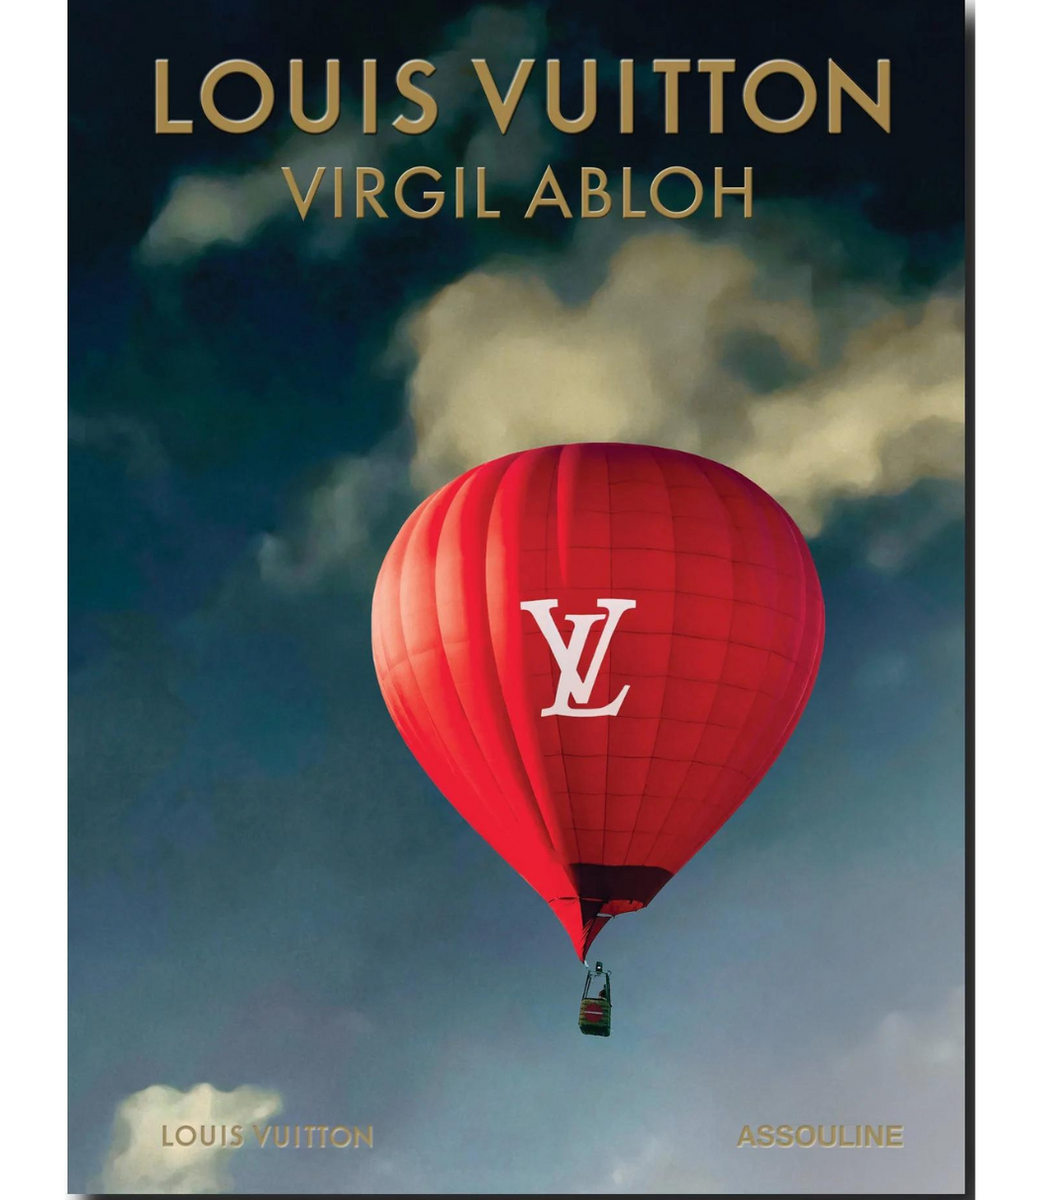 ASSOULINE Louis Vuitton: Virgil Abloh (Classic Balloon Cover